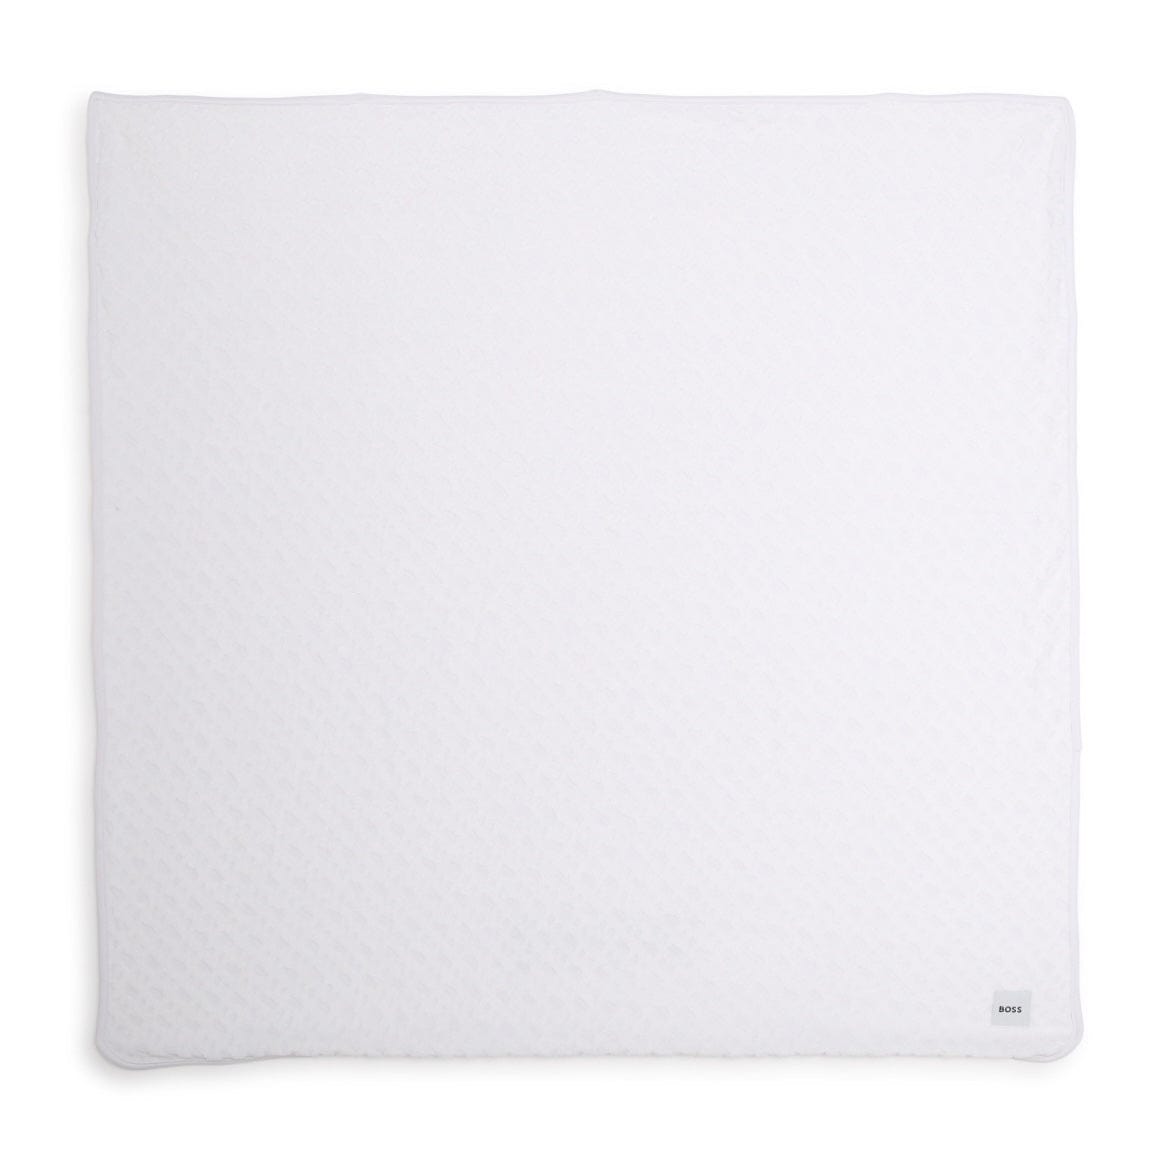 BOSS - Blanket - White